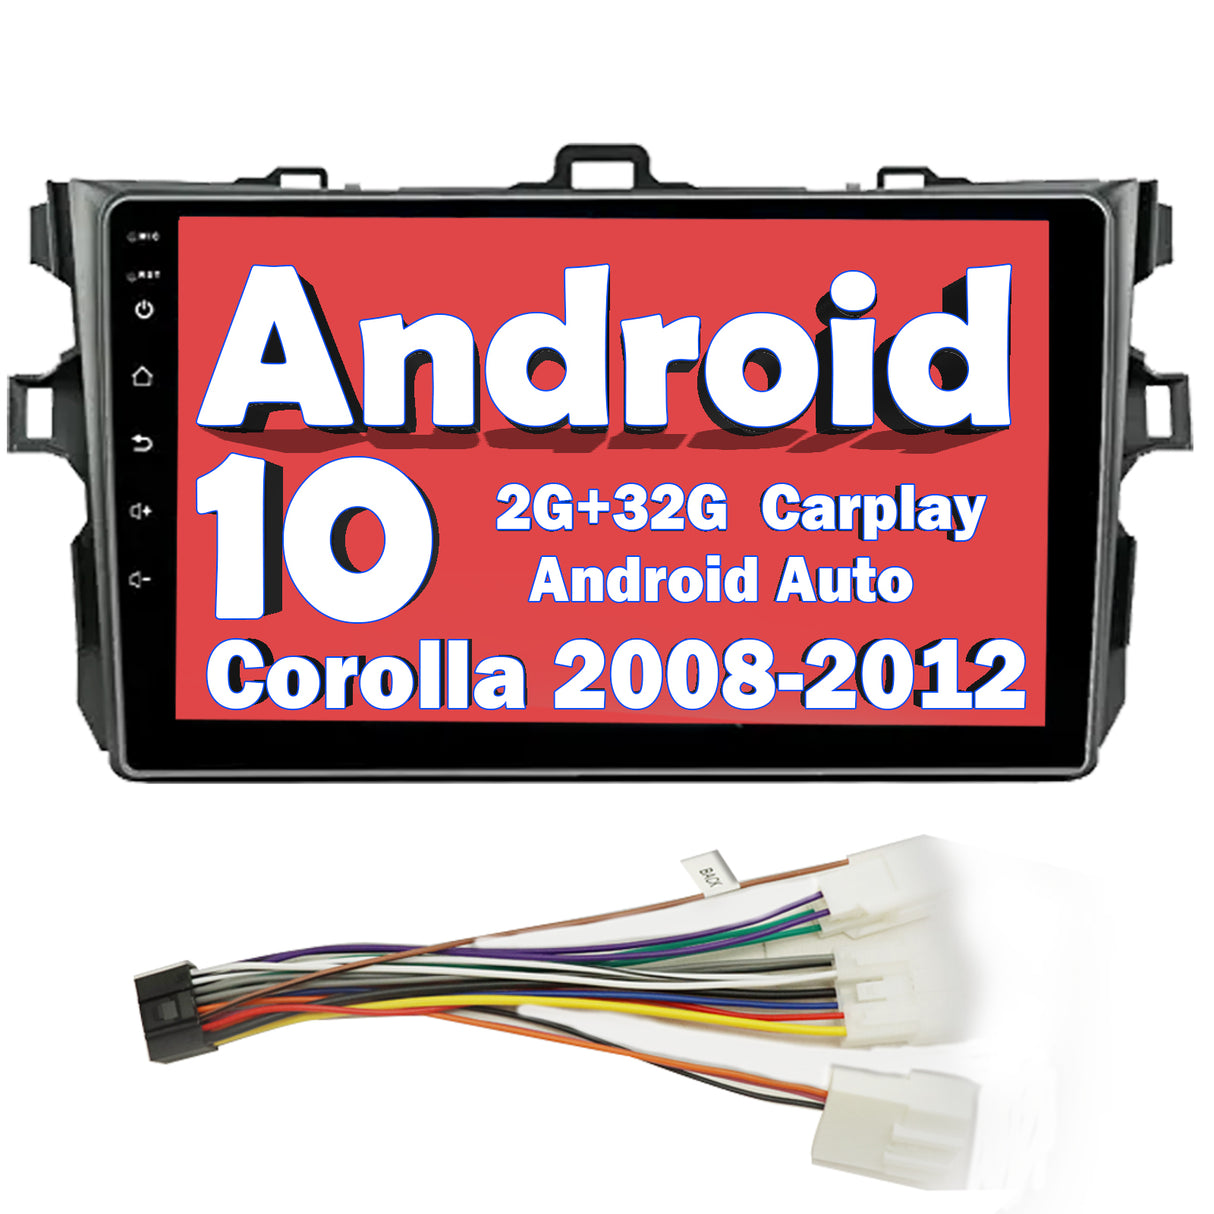 Binize Corolla 2008-2012 con Toyota android auto Carplay